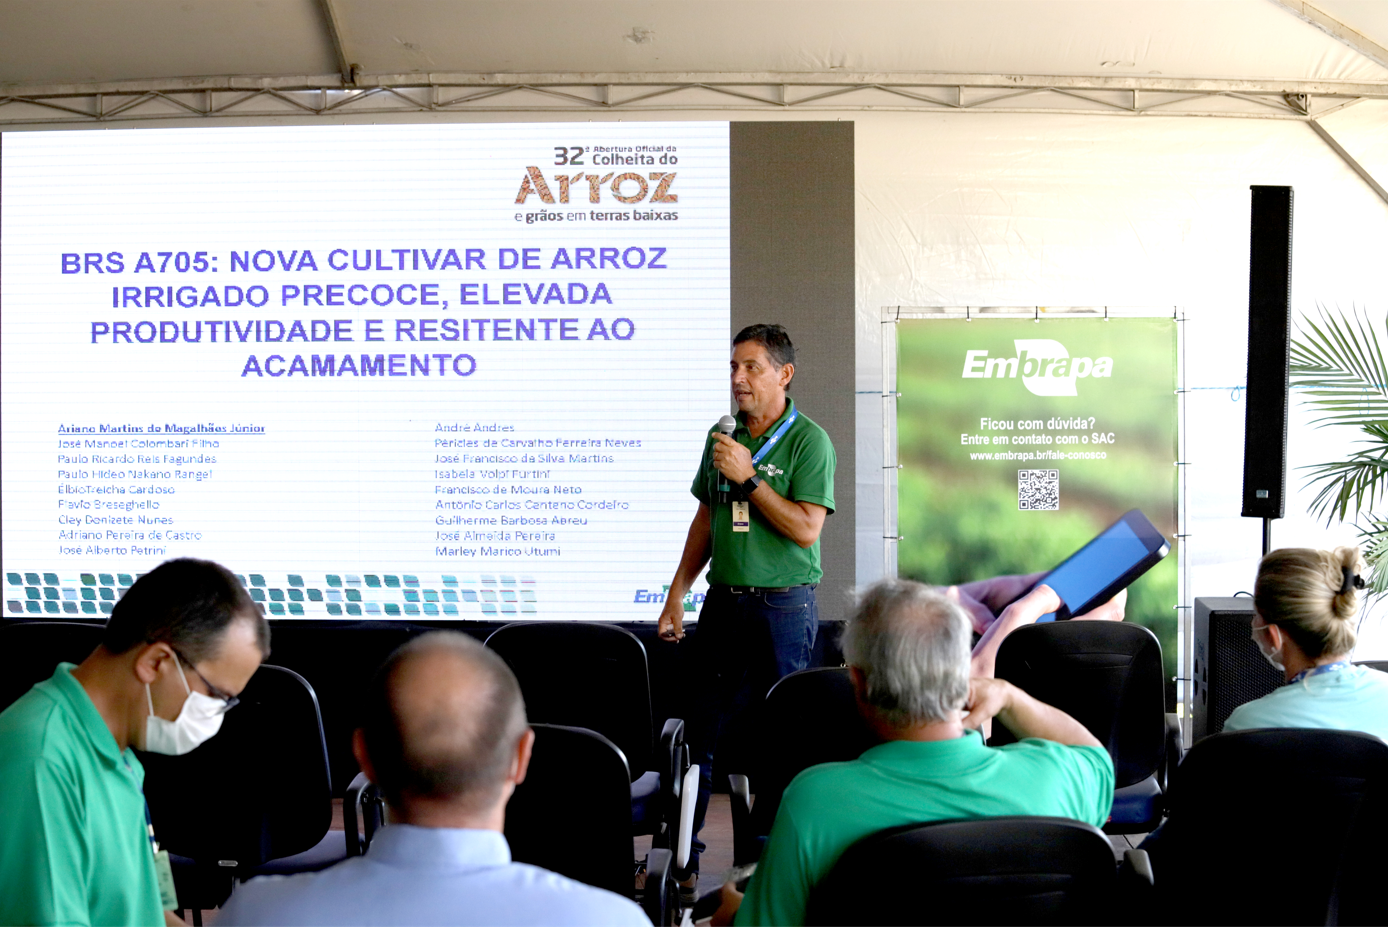 Embrapa lança cultivar de arroz irrigado precoce e faz assinatura de parcerias na Abertura da Colheita do Arroz